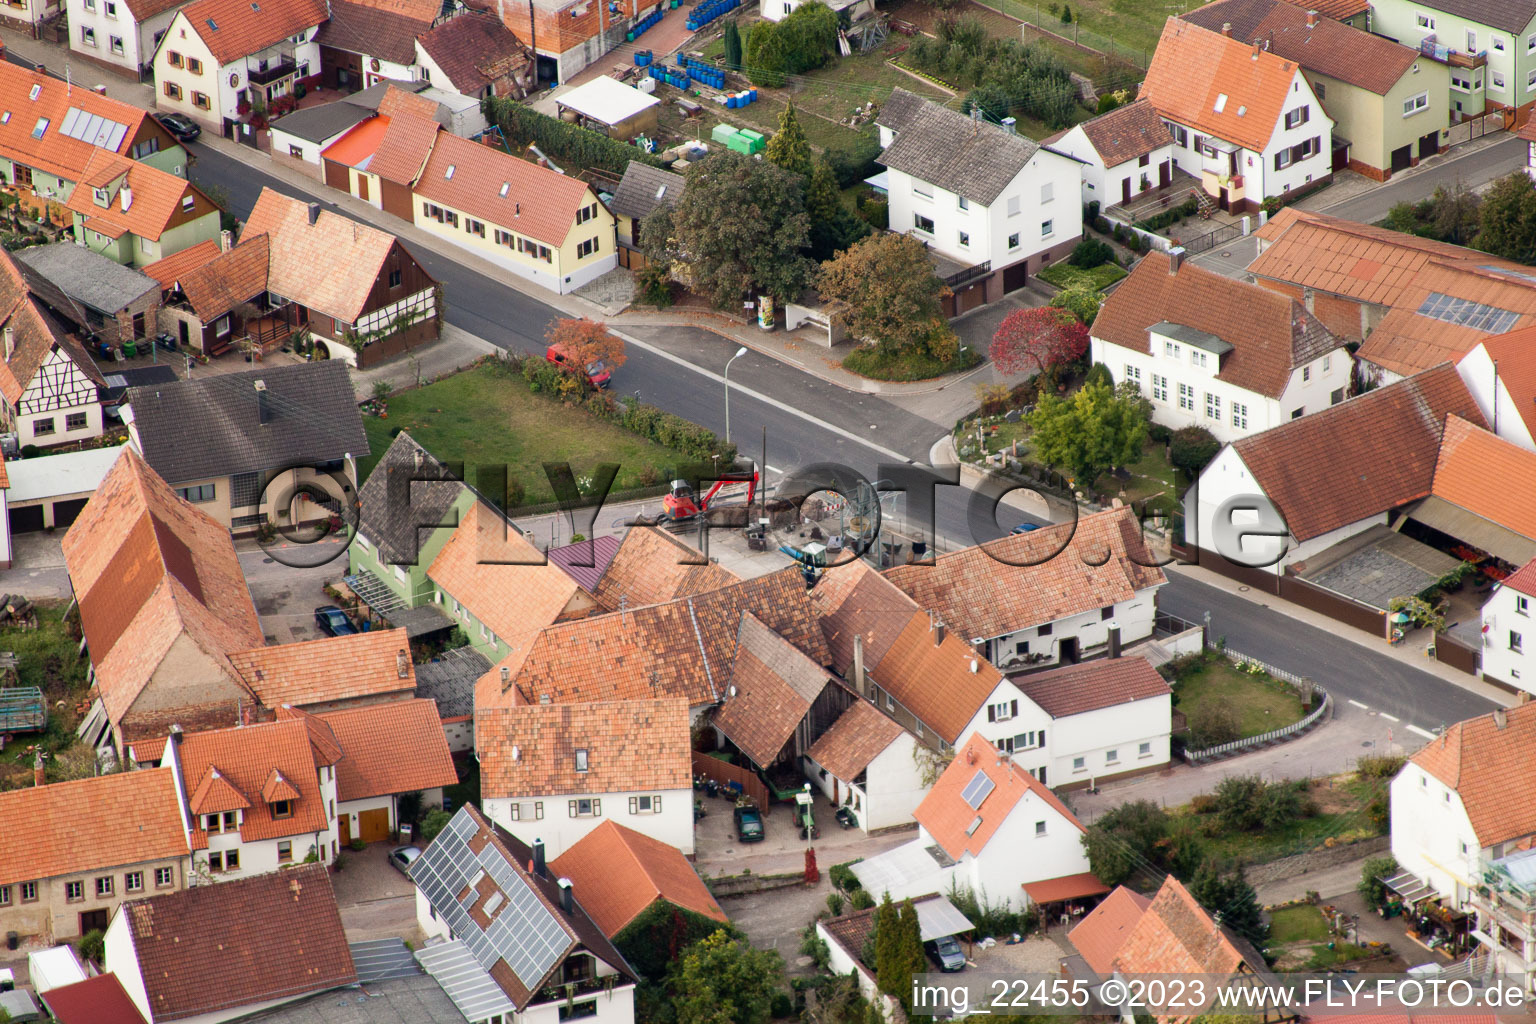 Drone image of District Rechtenbach in Schweigen-Rechtenbach in the state Rhineland-Palatinate, Germany